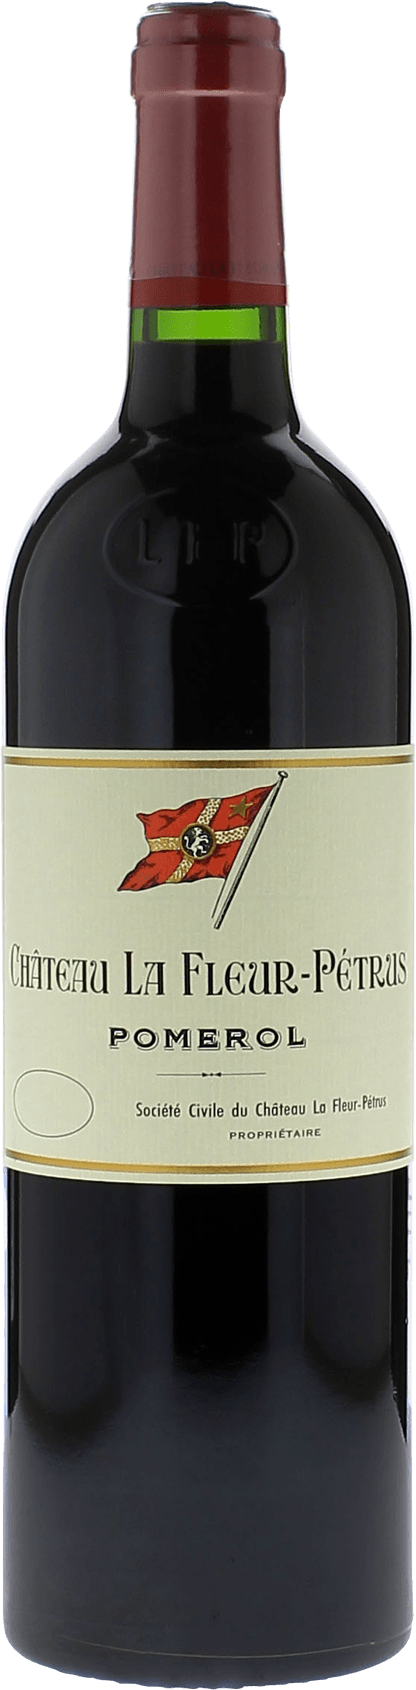 La fleur petrus 2021  Pomerol, Bordeaux rouge